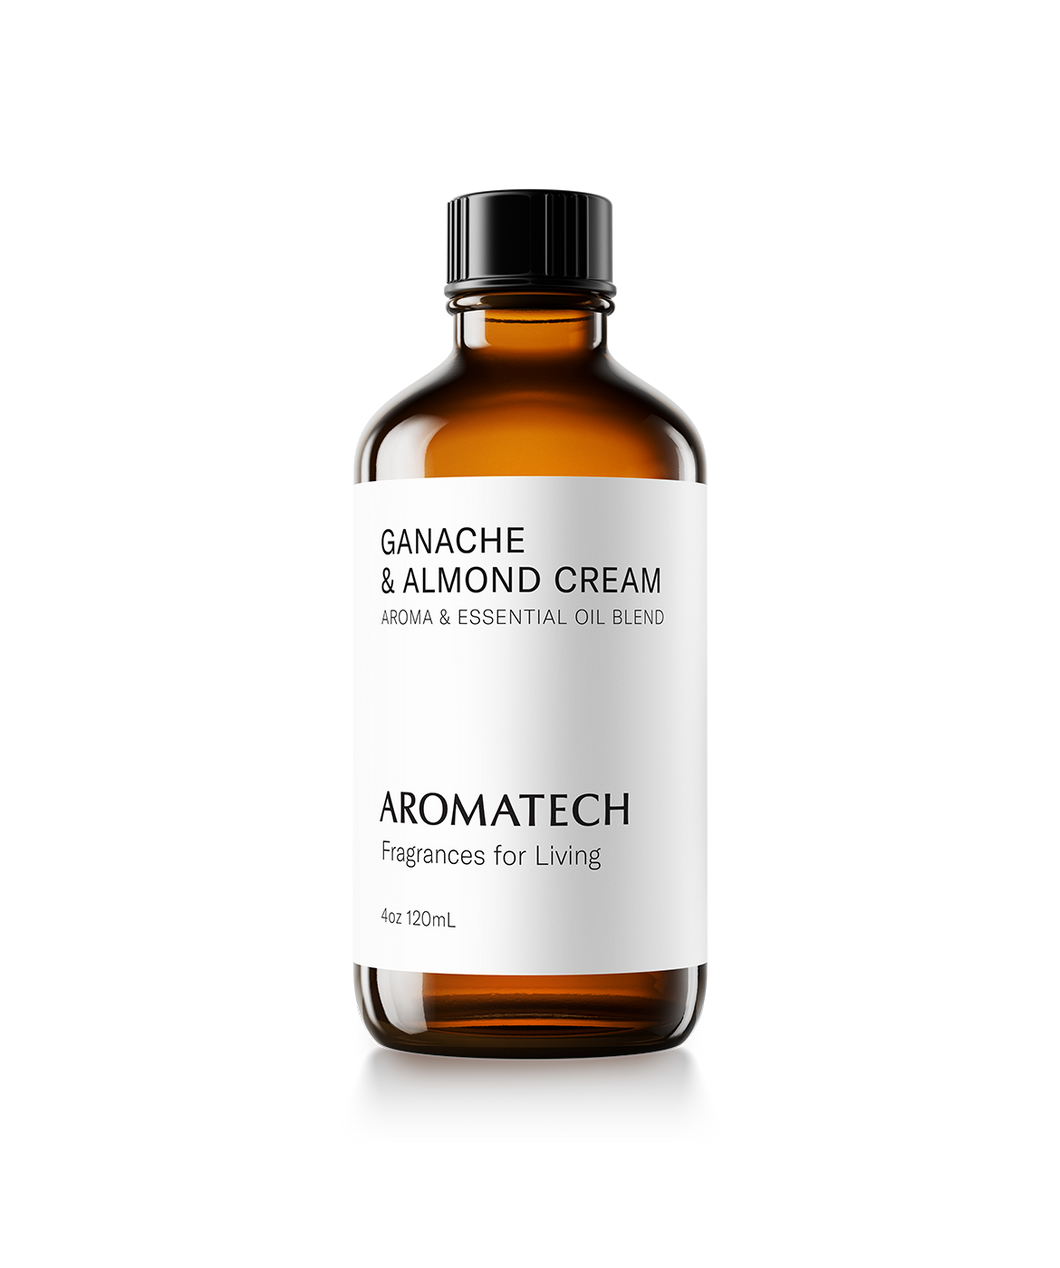 Ganache & Almond Cream